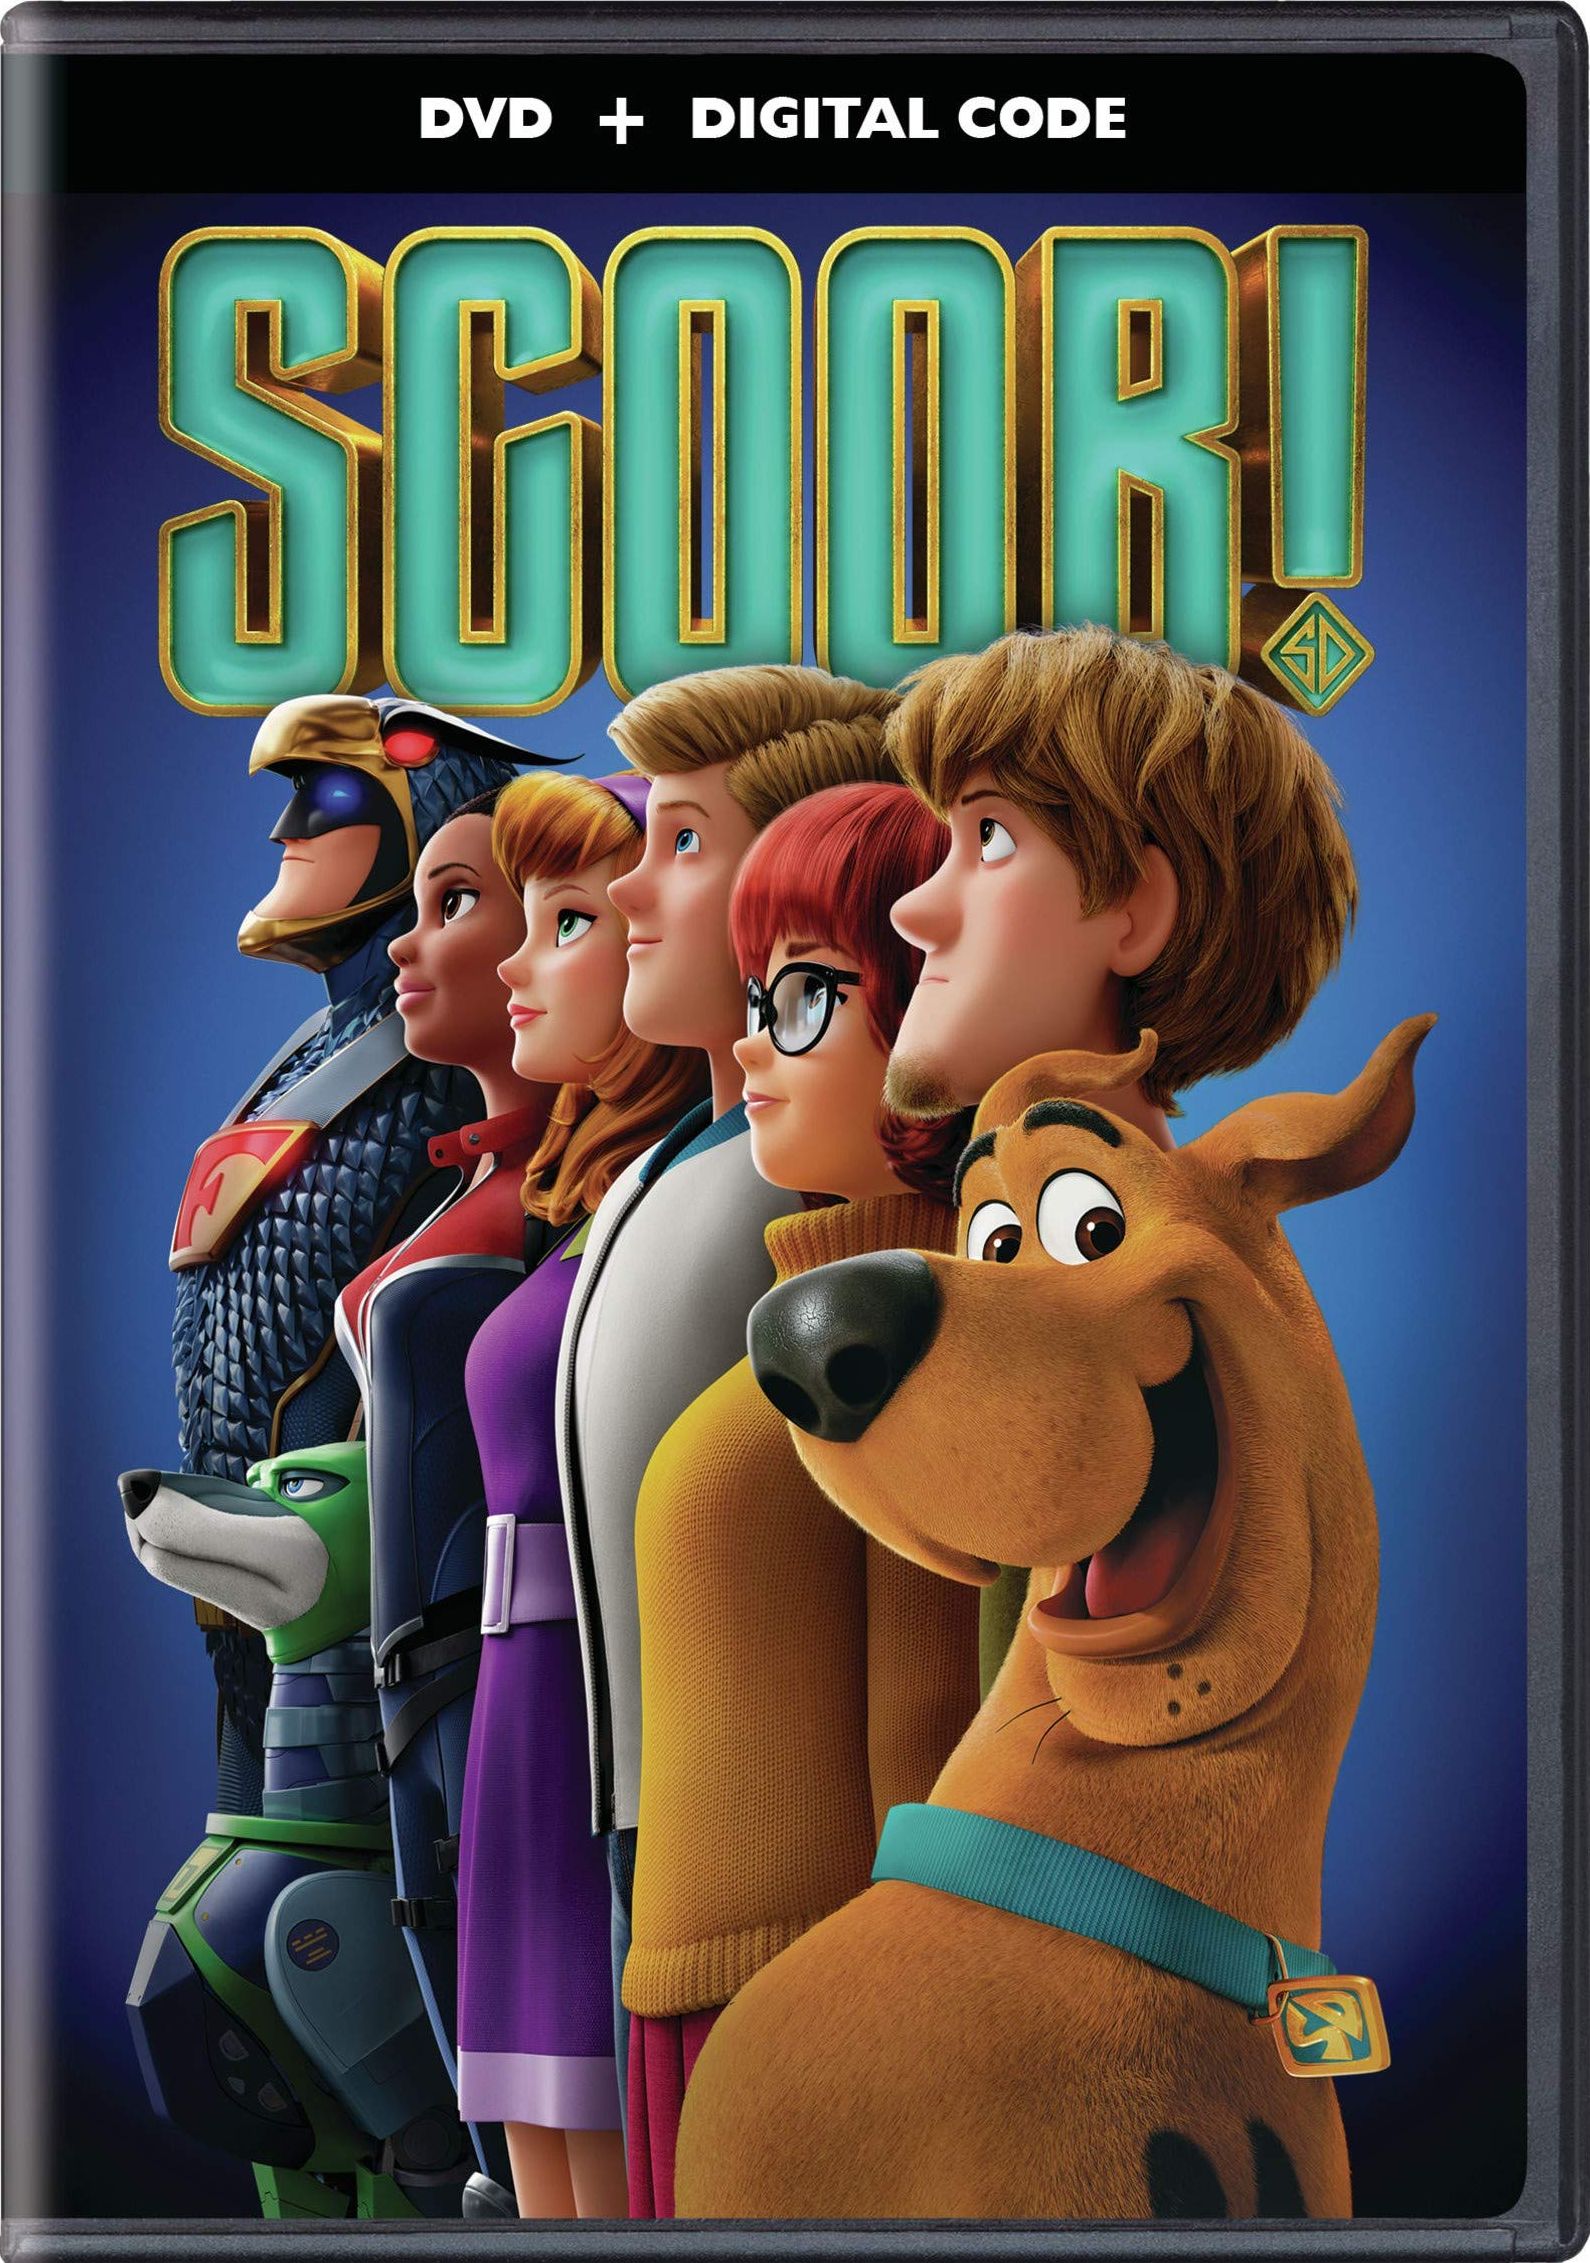 45 Top Images Scooby Doo Movie 2020 Release Date Scooby Doo 2